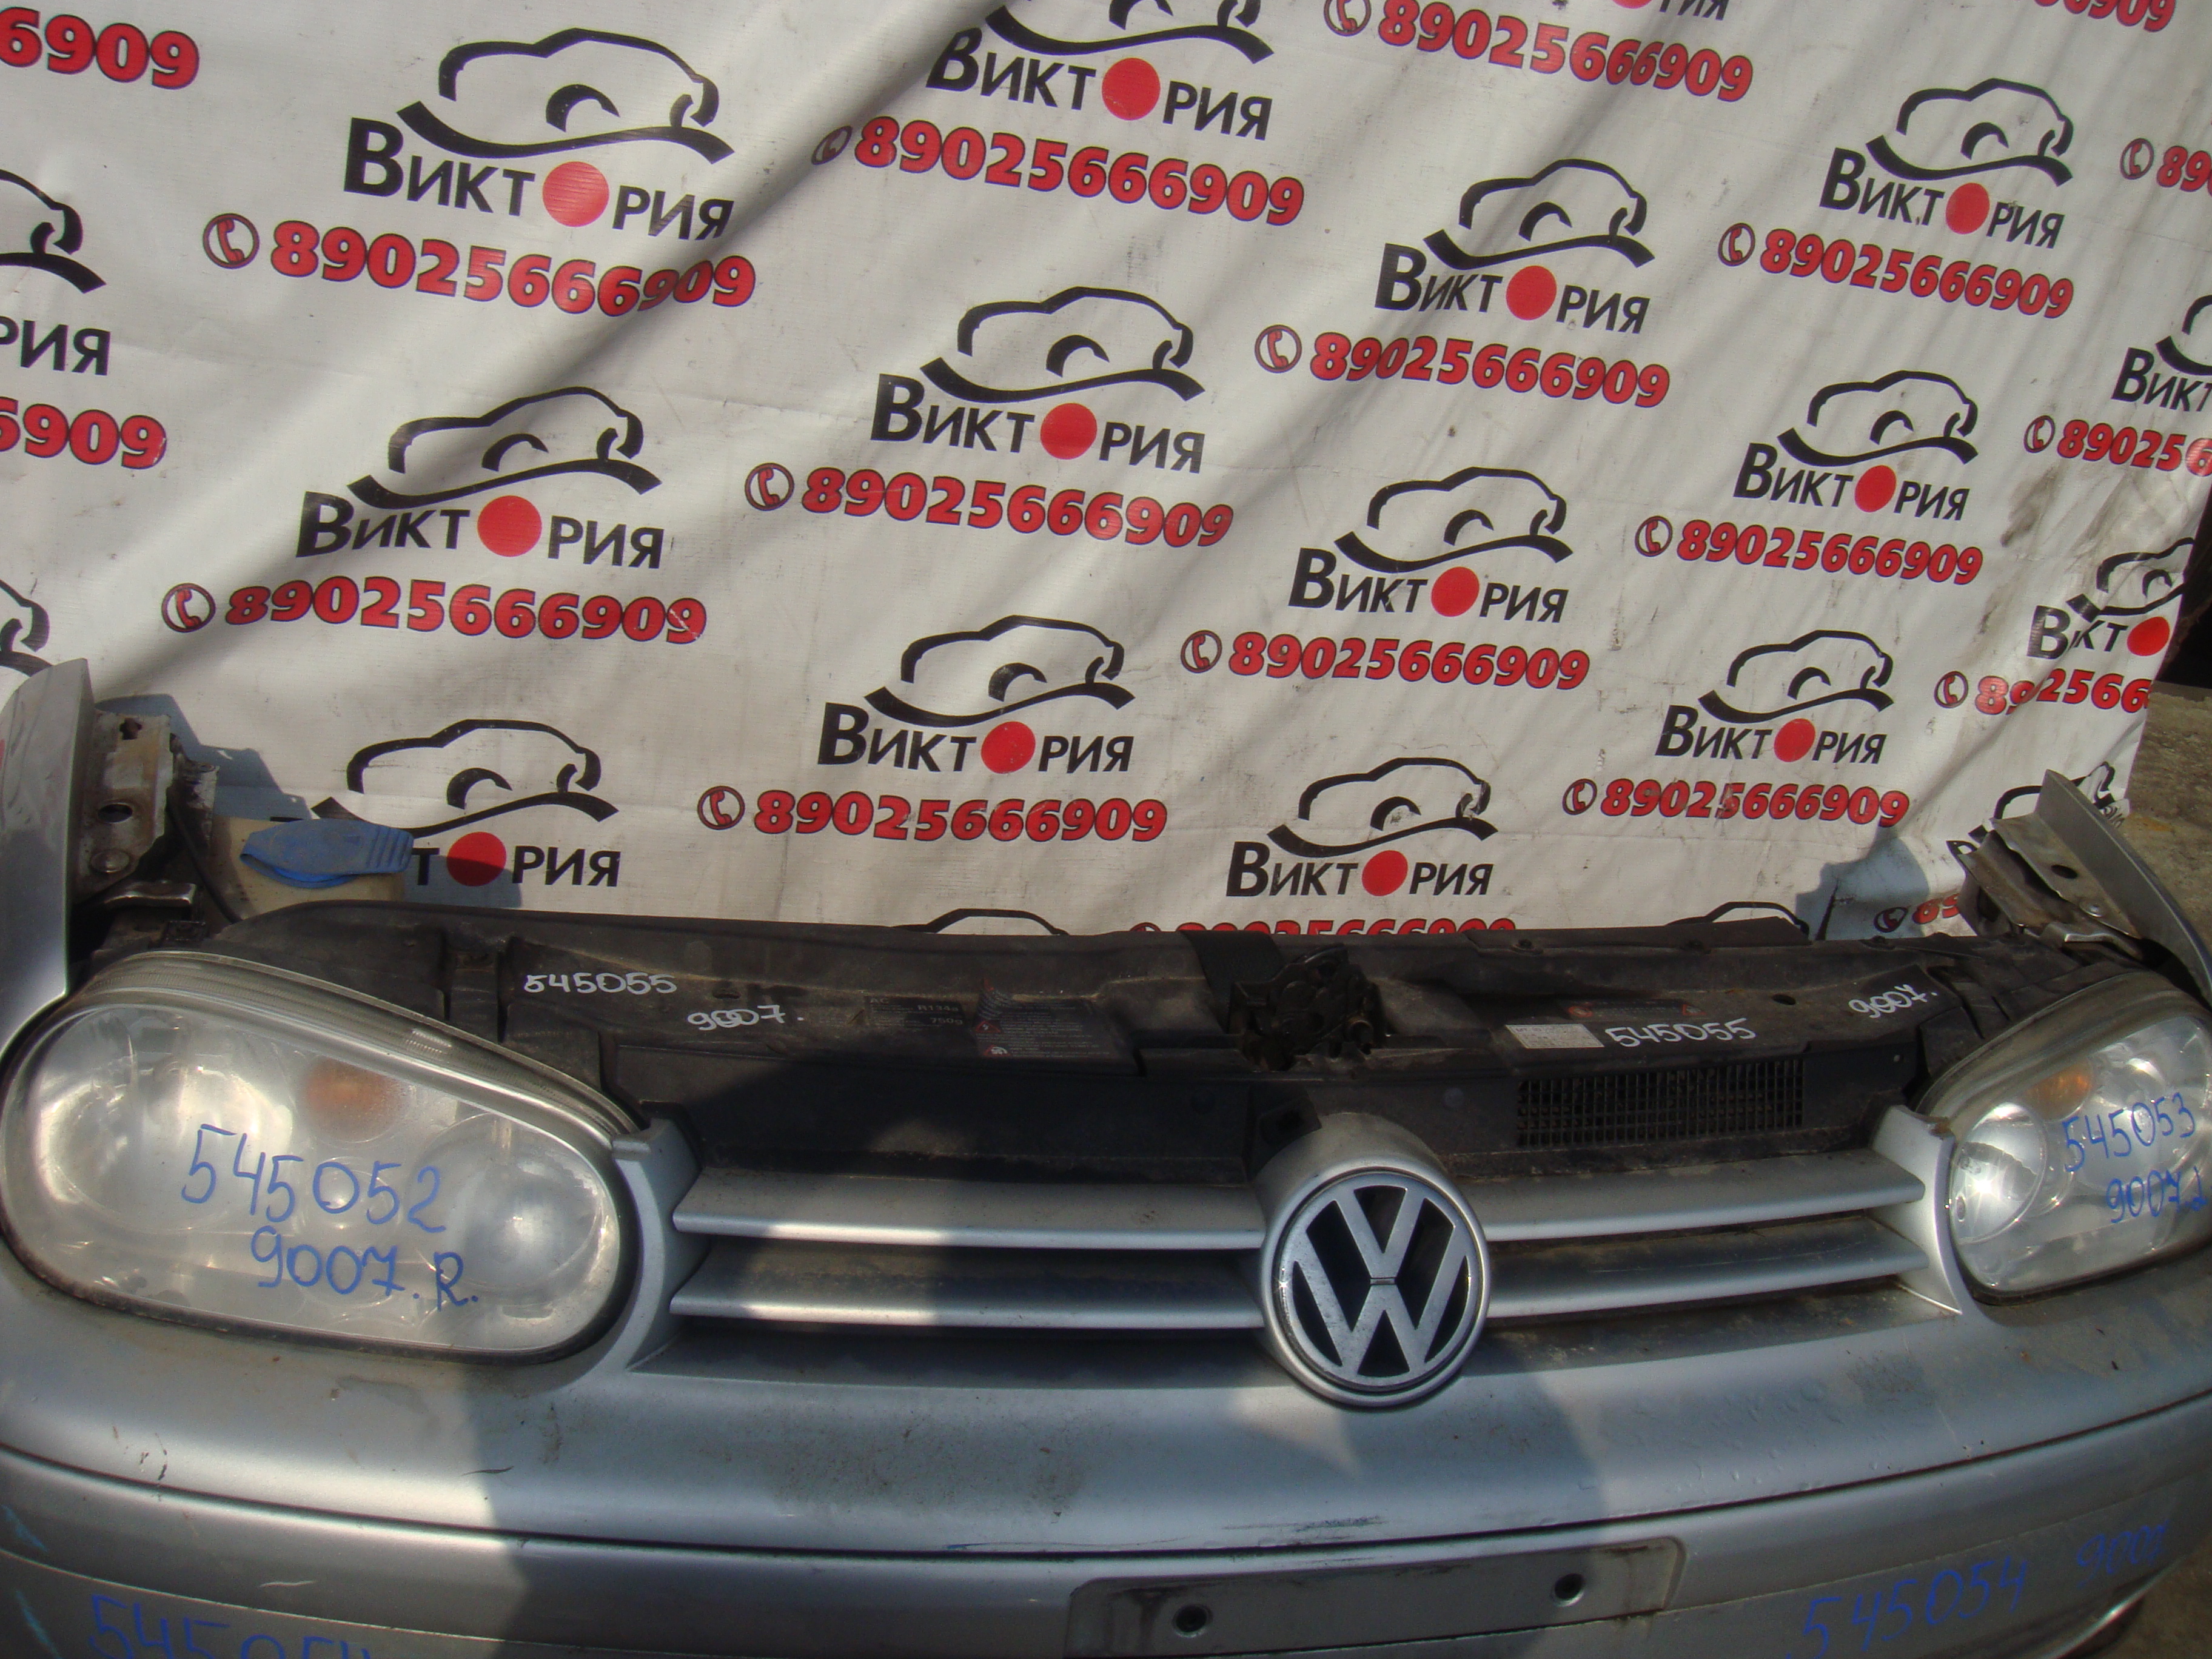 Телевизор
 Volkswagen
 Golf
 2001 г.в.,
                                 двигатель: 2,0 бензин;